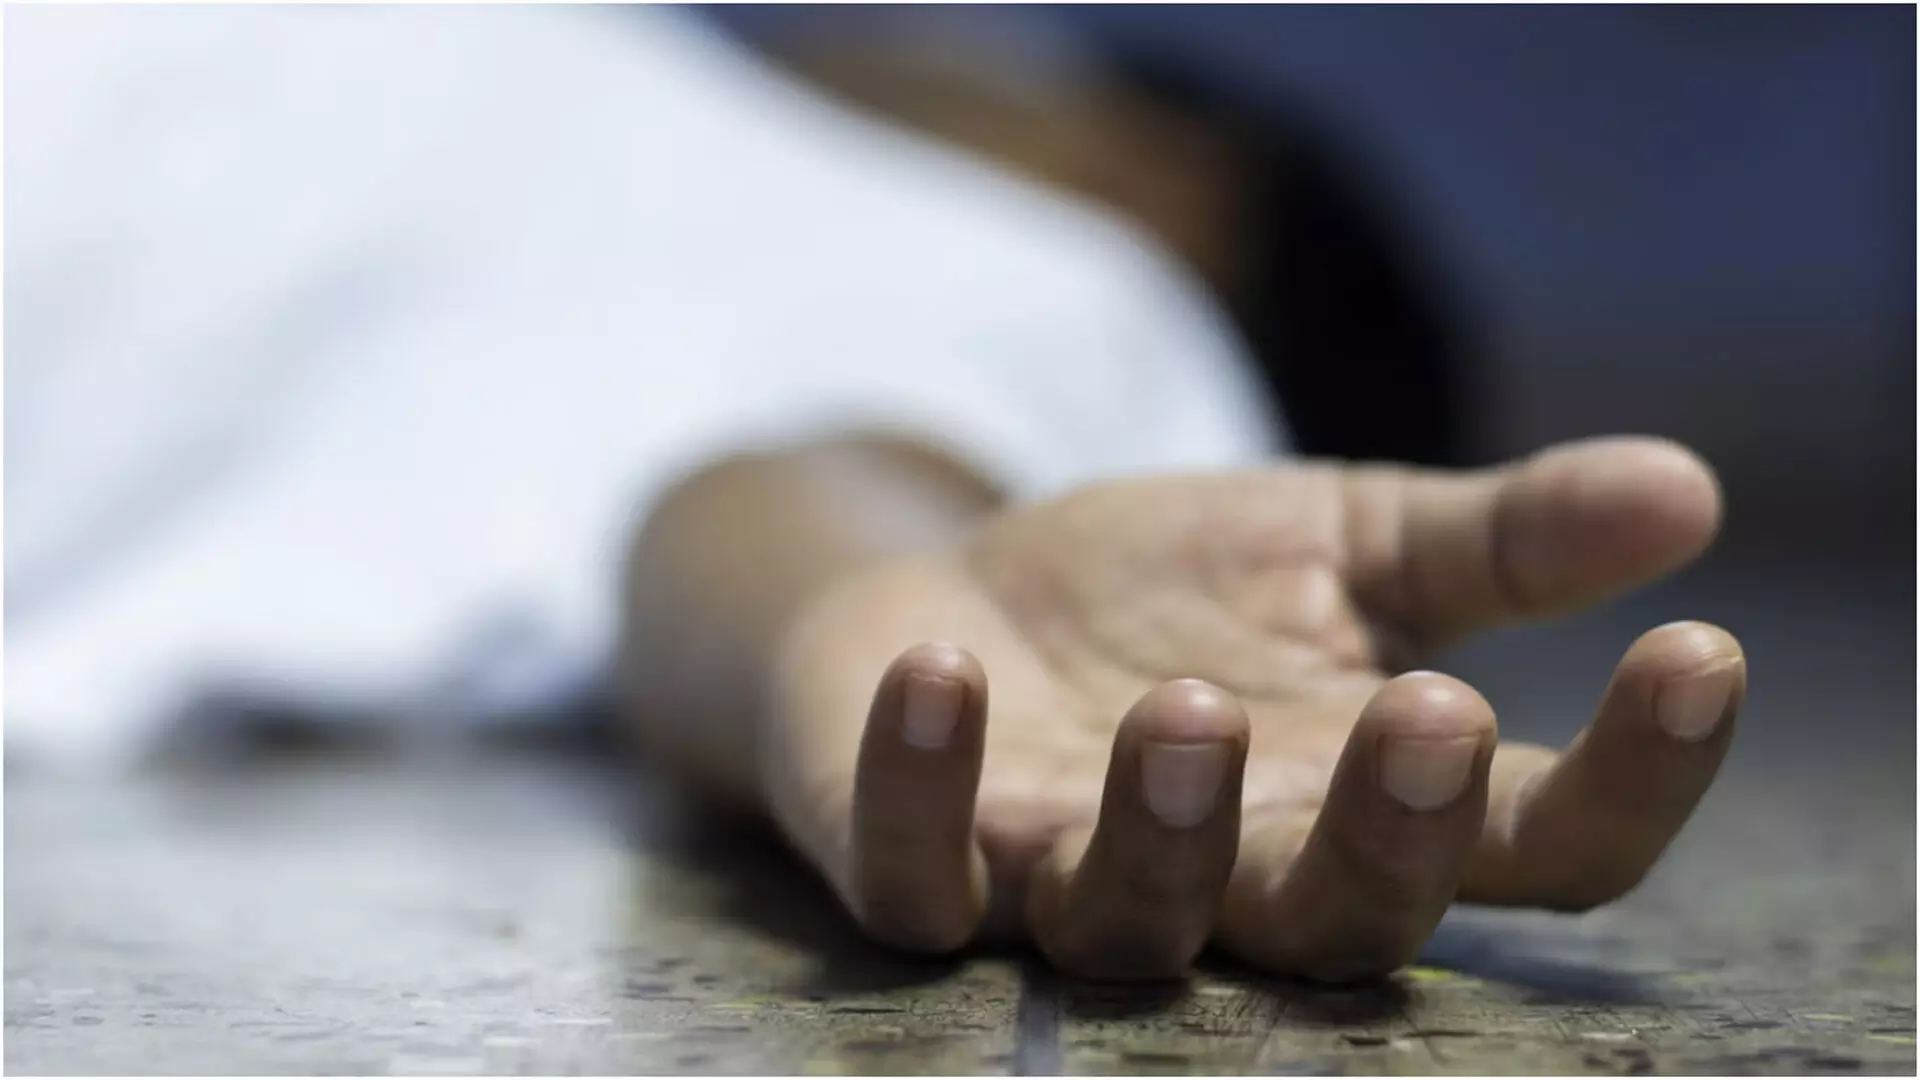 Mumbai: नींद में चलने की वजह से छठी मंजिल से गिरकर 19 वर्षीय युवक की मौत